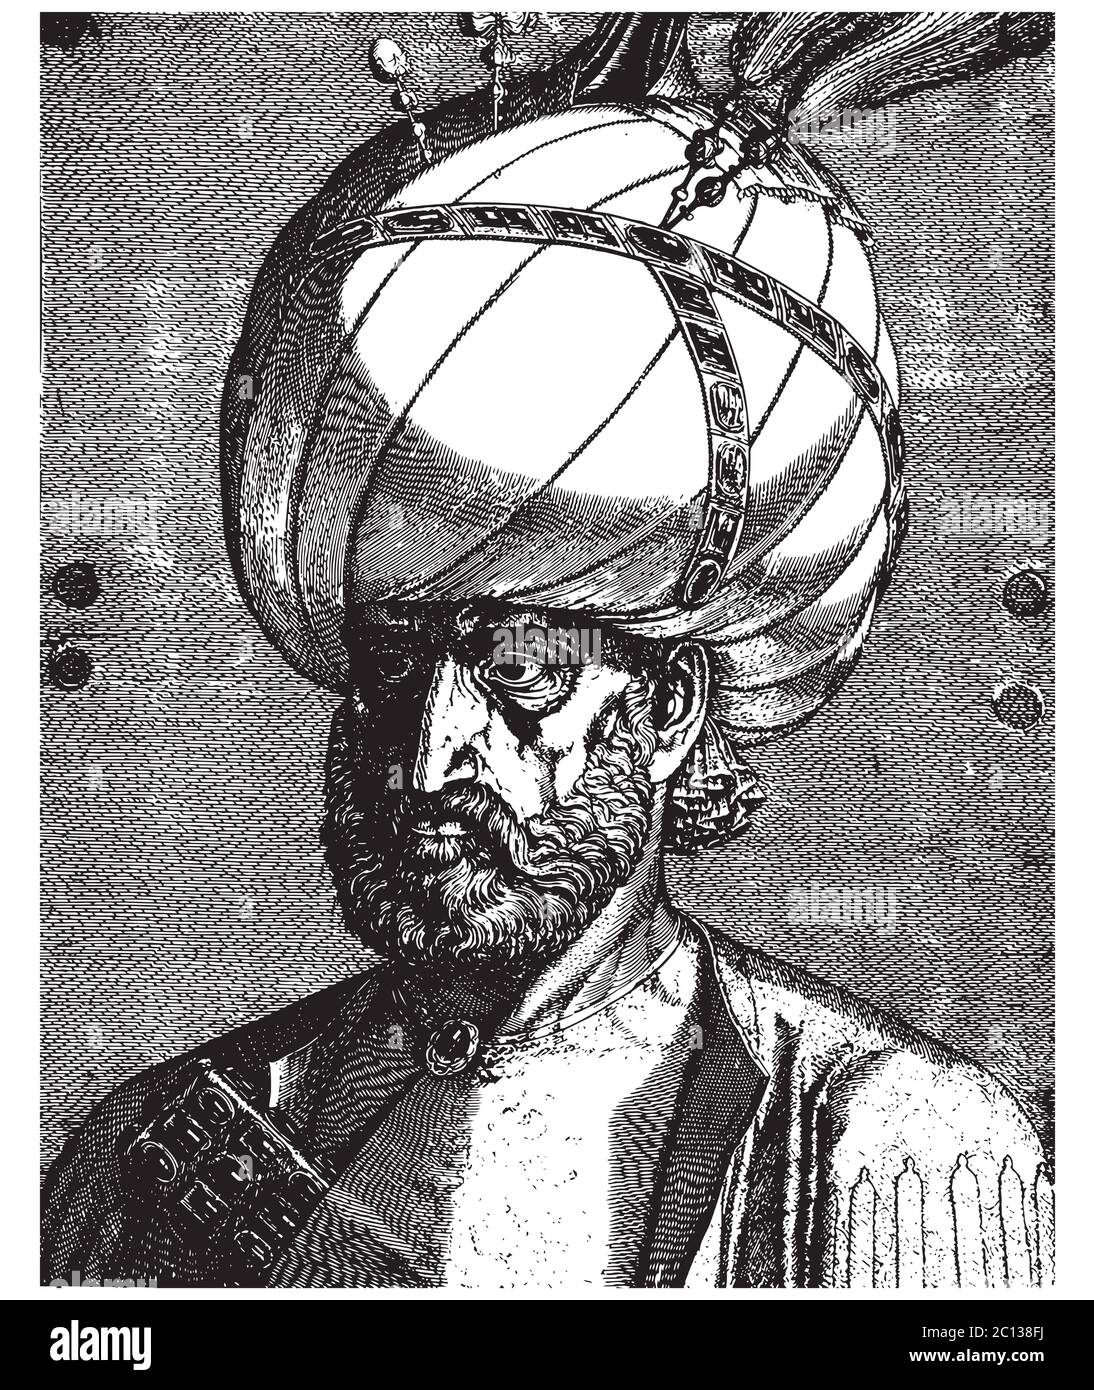 Sultano ottomano Suleiman il magnifico ritratto, l'illustrazione vettoriale dell'incisione d'epoca Illustrazione Vettoriale